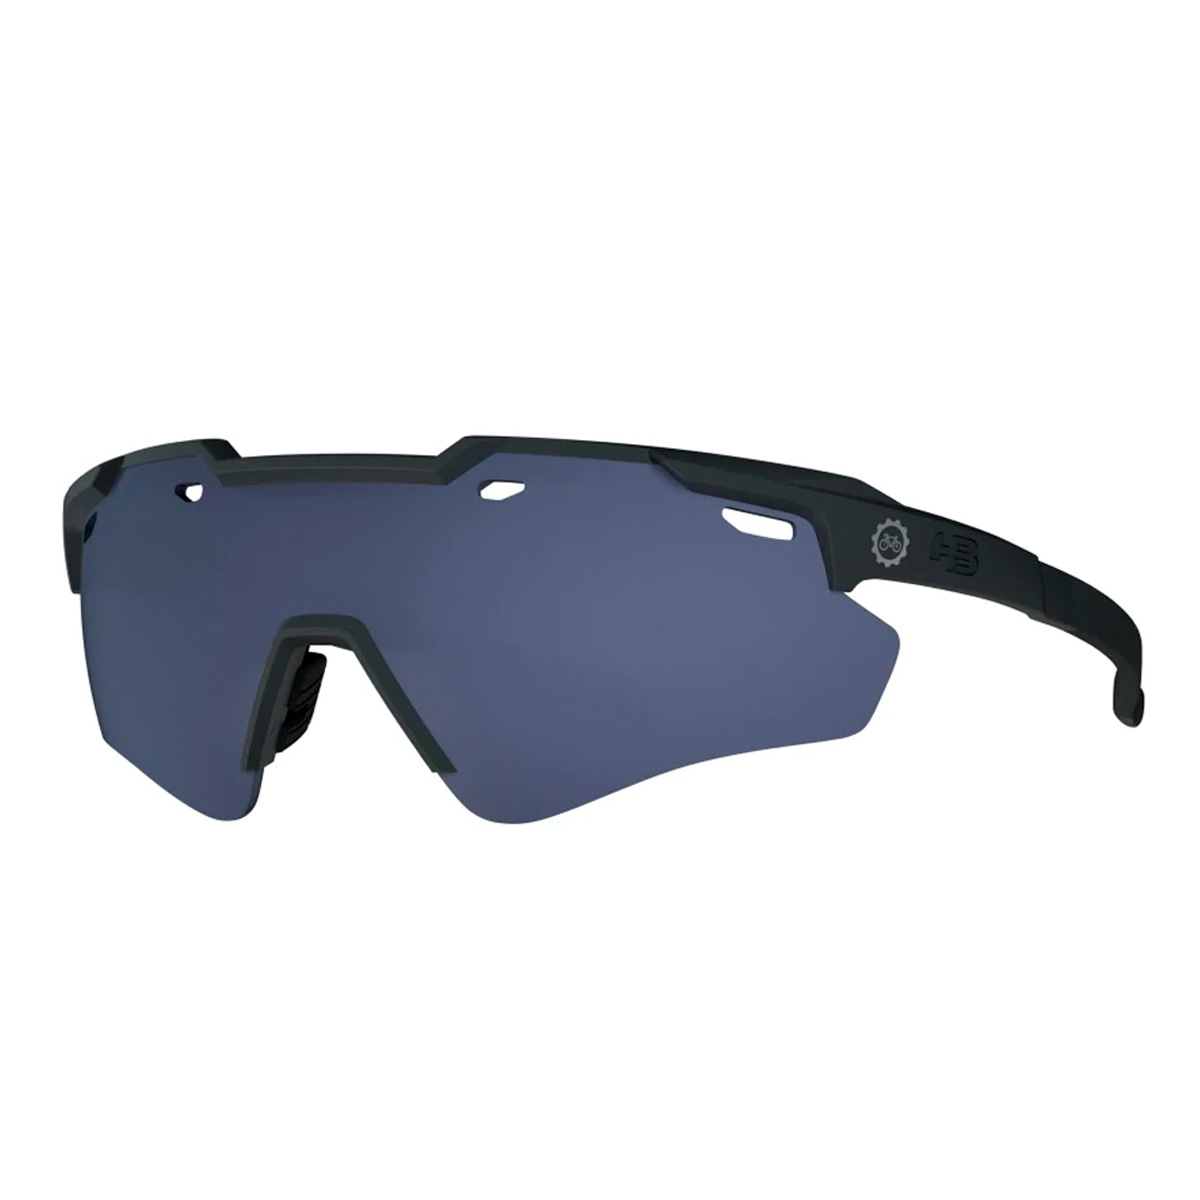 Oculos Para Ciclismo HB Shied Evo 2.0 PQP Preto Fosco e KIT 2 lentes Azul e Cristal